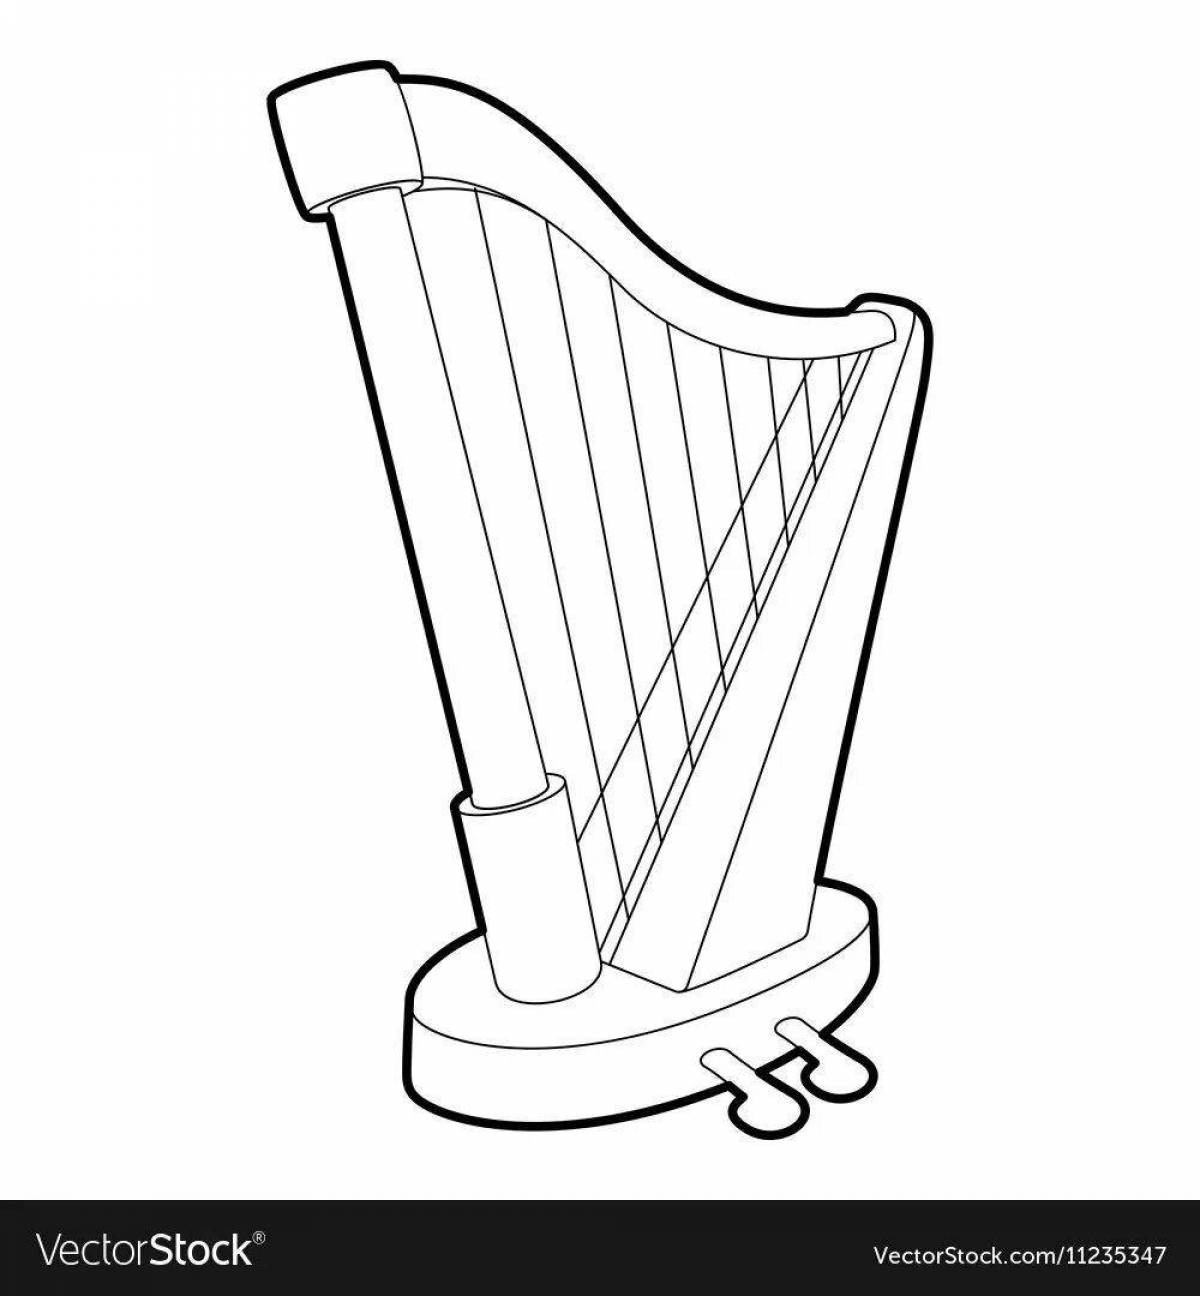 Harp fun coloring for kids